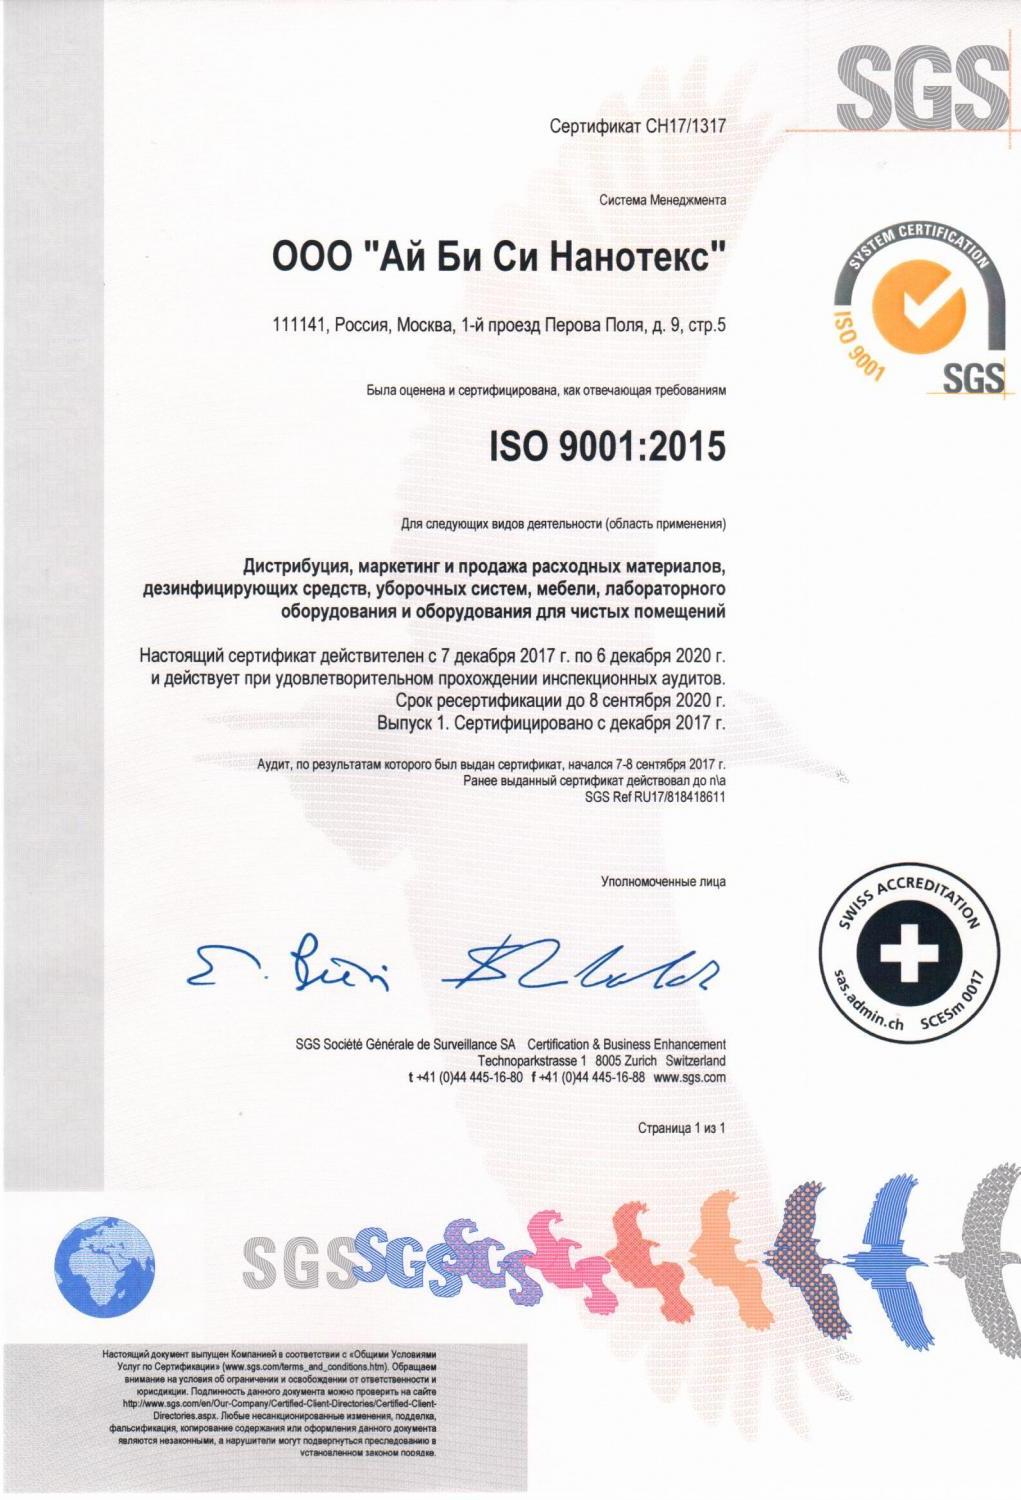 Сертификат ISO - гарантия исключительного сервиса и надежности компании для сотрудничества